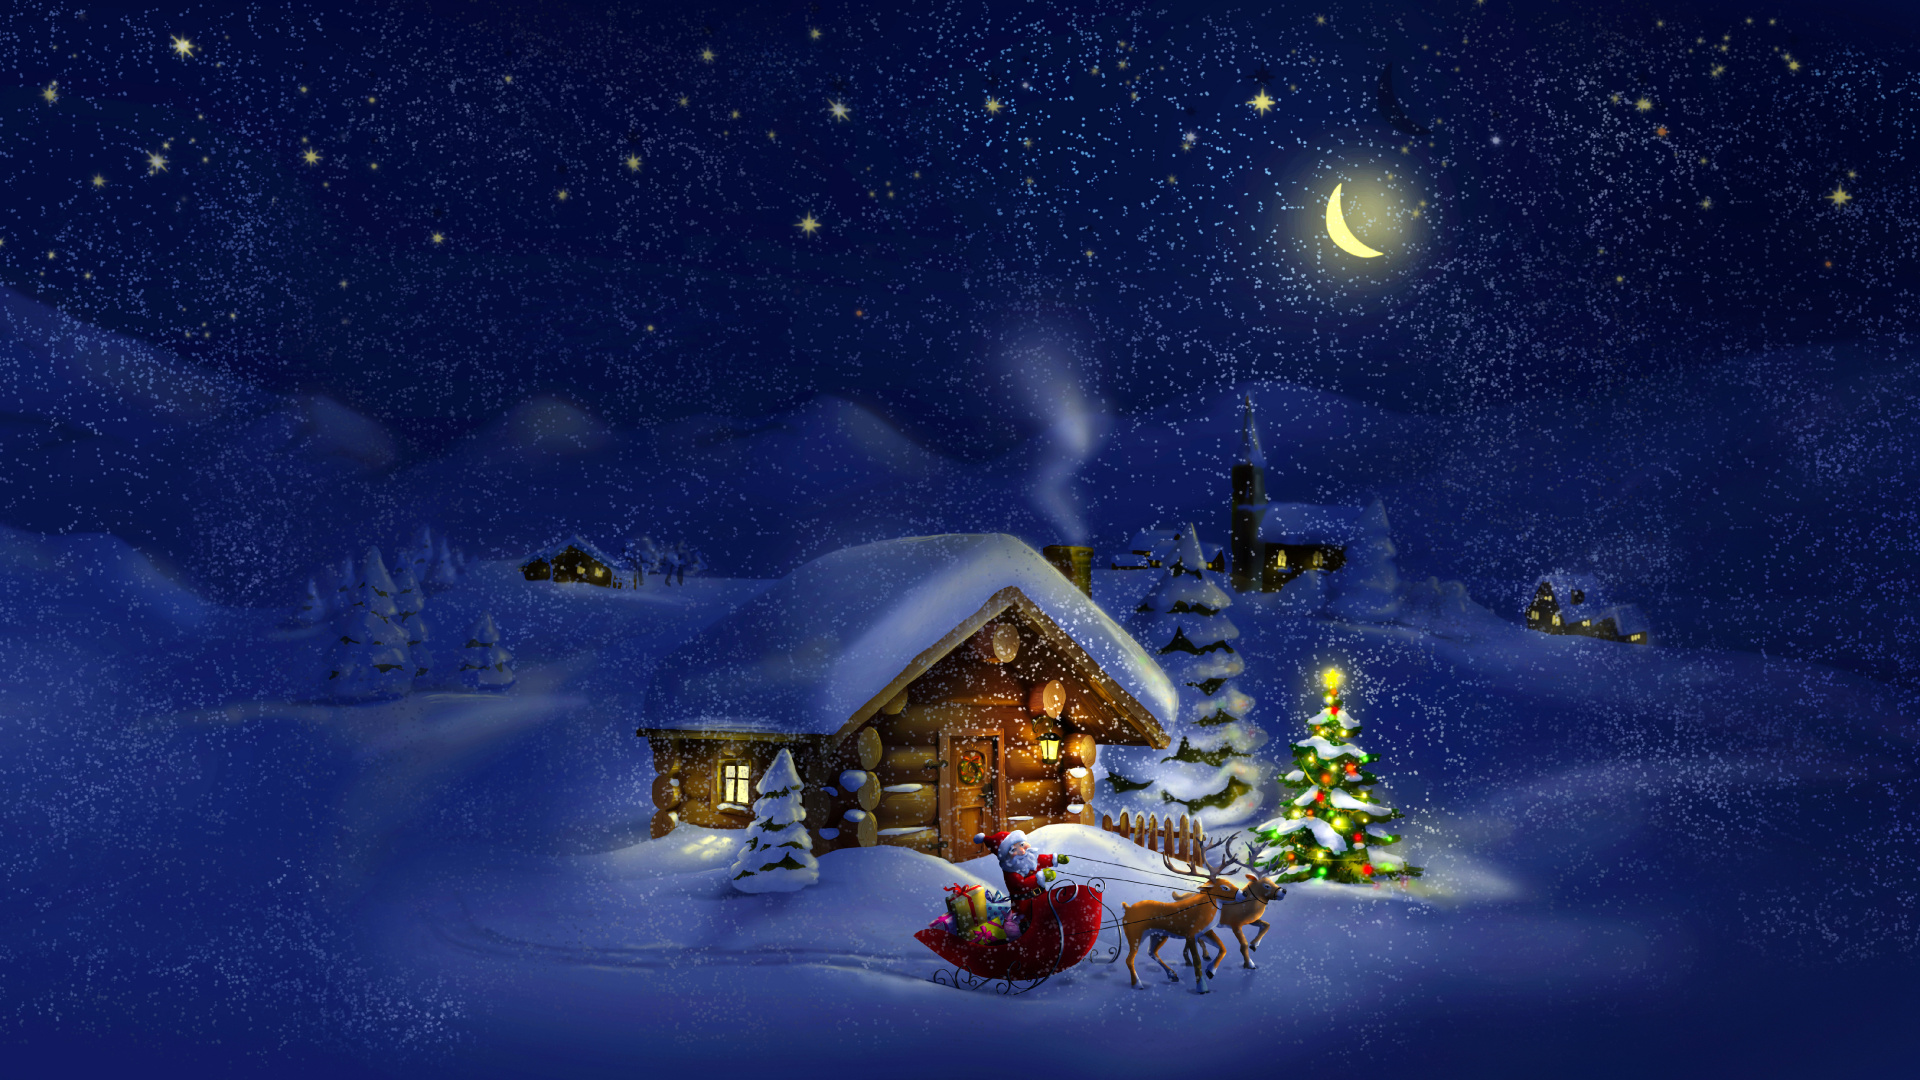 Weihnachten, Weihnachtsmann, Winter, Schnee, Nacht. Wallpaper in 1920x1080 Resolution